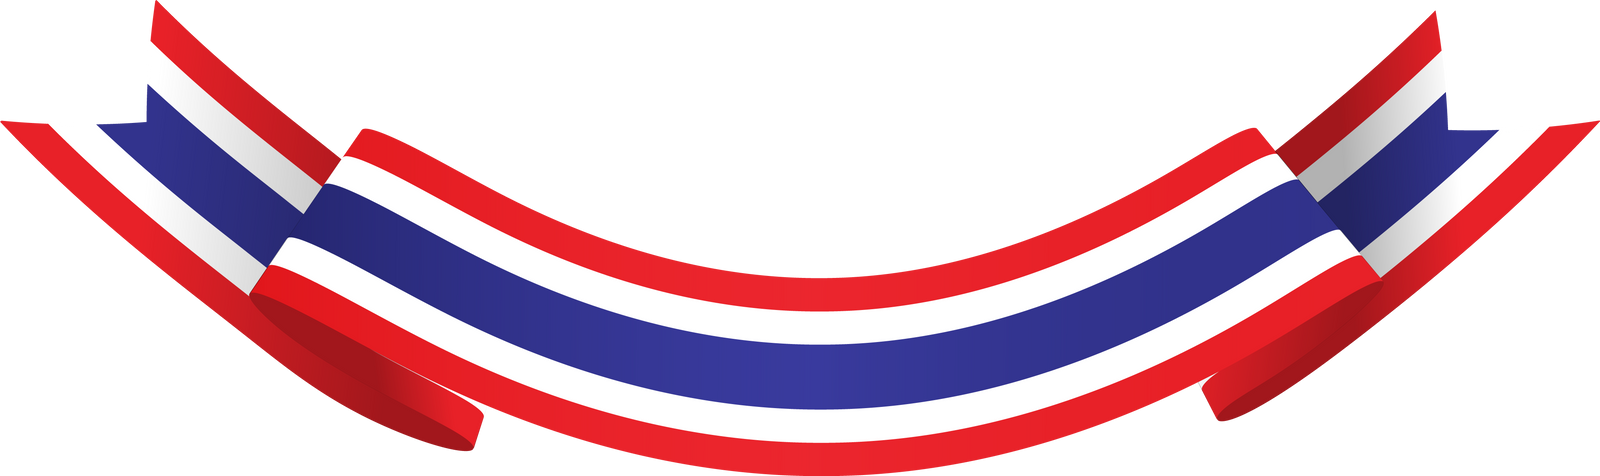 Thai Flag Ribbon Realistic Thailand